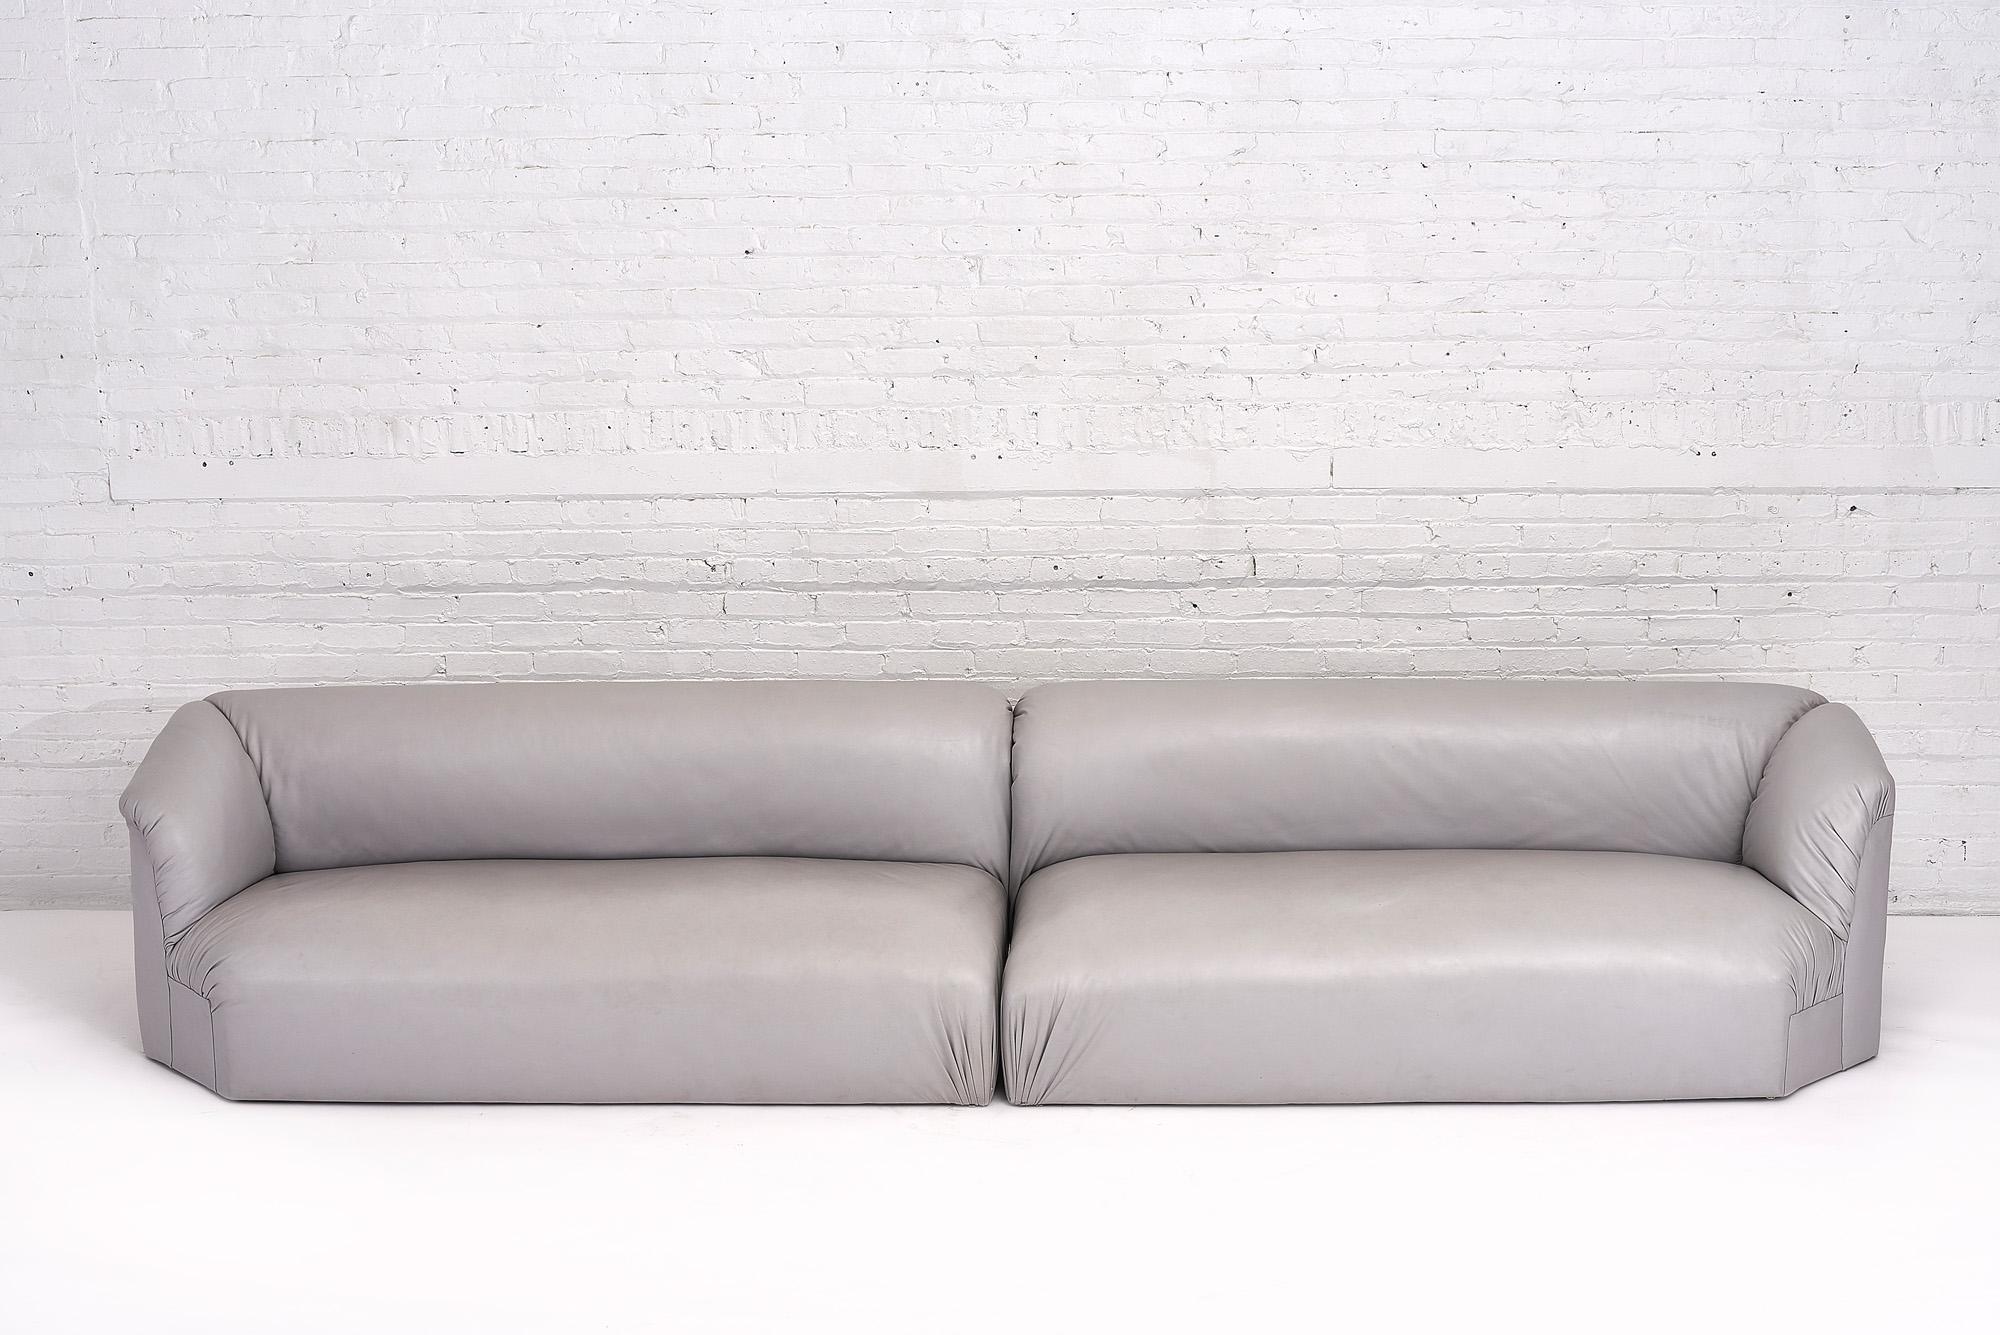 Canapés sectionnels postmodernes 2 pièces en cuir gris. ce canapé modulaire 2 pièces peut être utilisé tel quel ou dans un coin. Cuir gris souple et lisse de haute qualité.